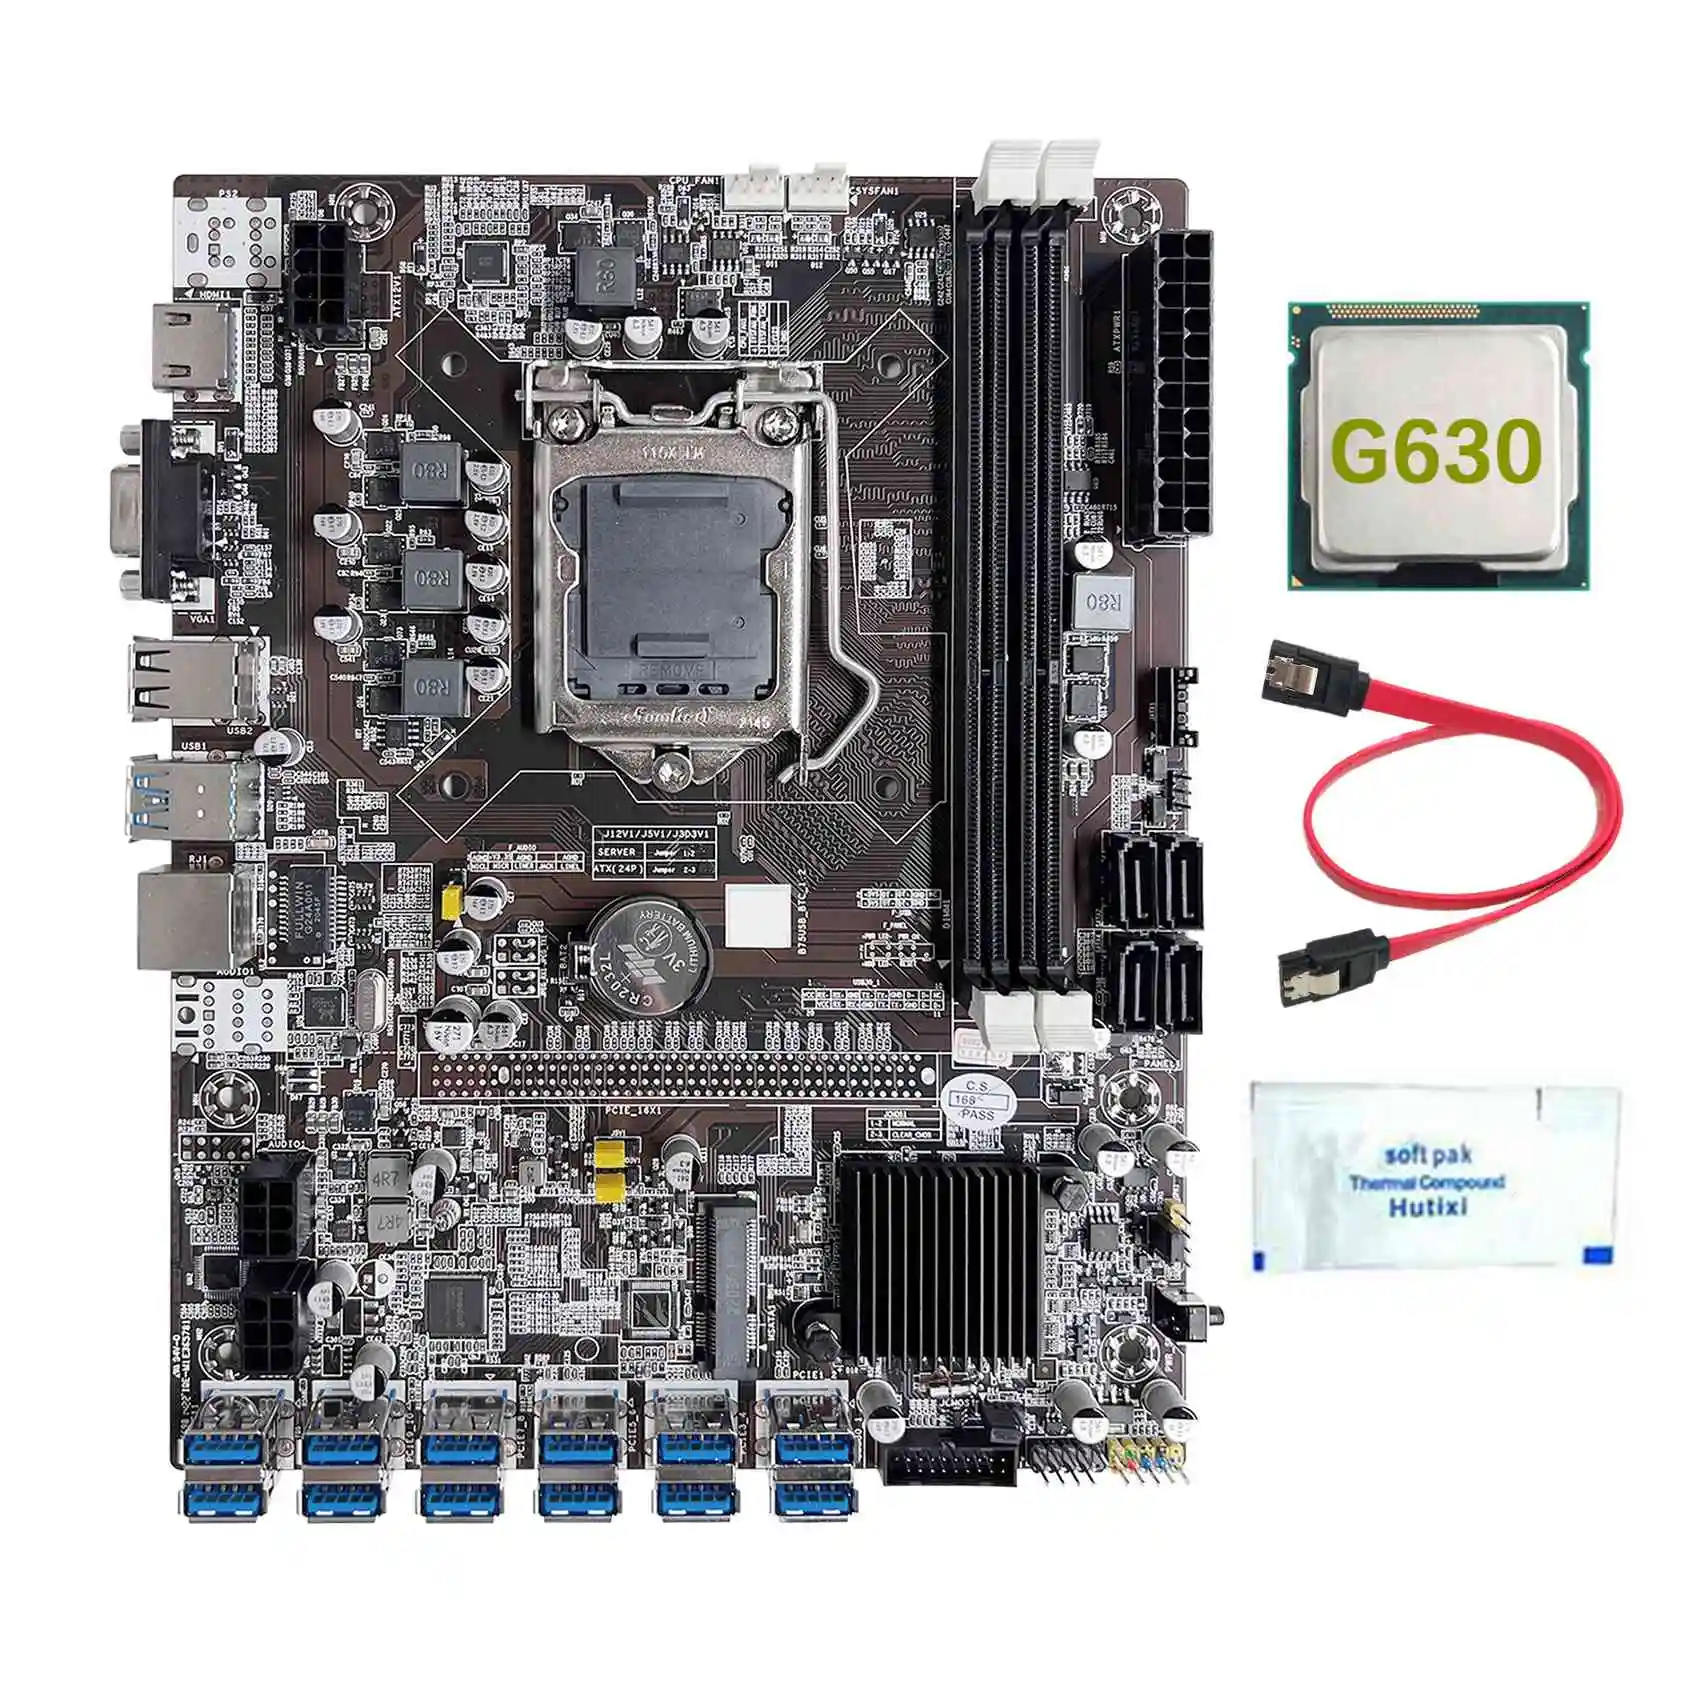 

B75 12 Card GPU BTC Mining Motherboard+G630 CPU+Thermal Grease+SATA Cable 12XUSB3.0(PCIE) Slot LGA1155 DDR3 RAM MSATA